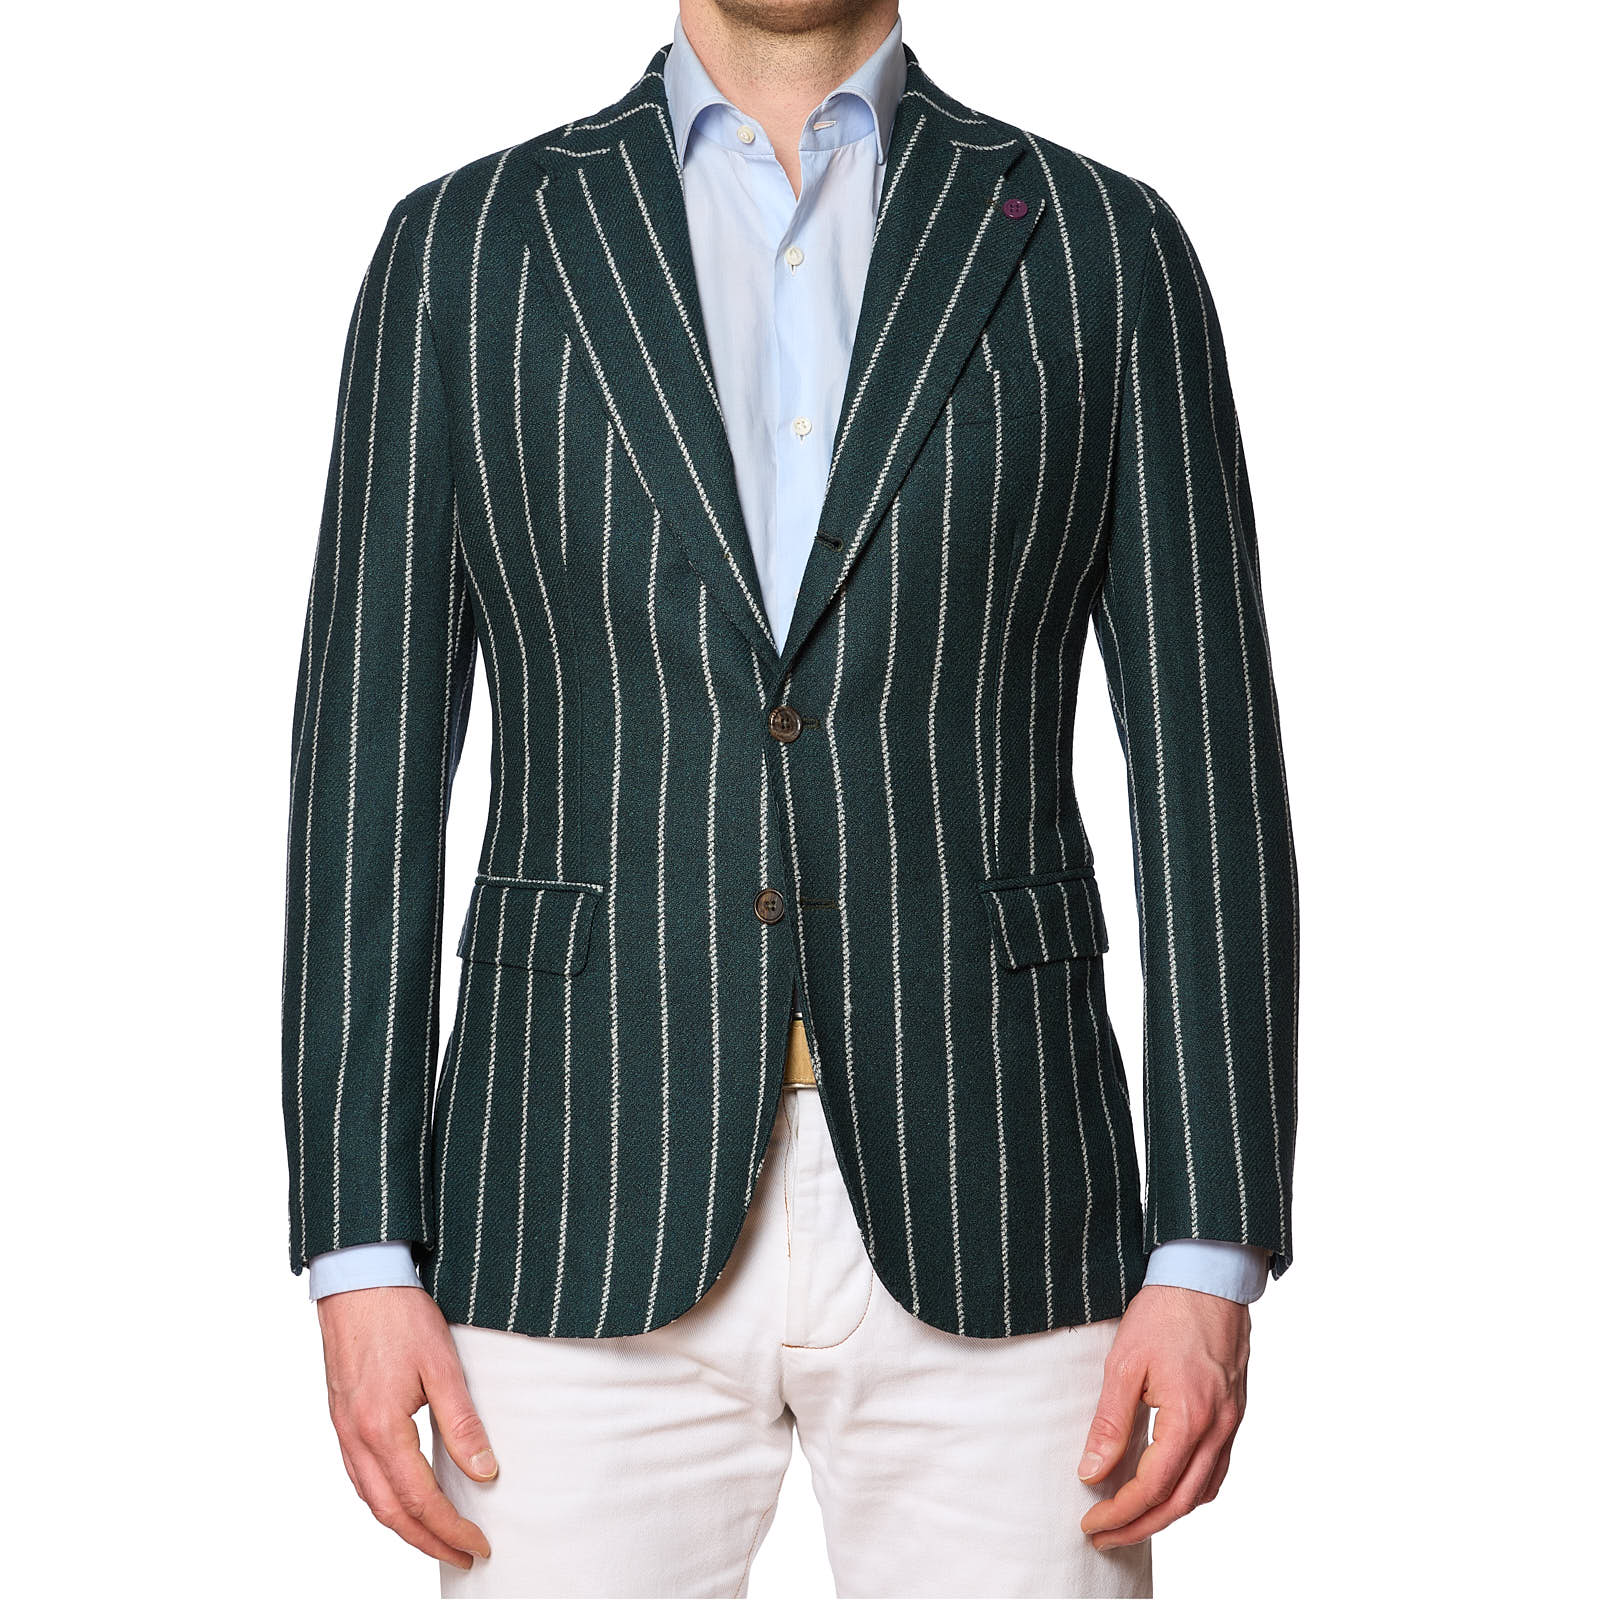 SARTORIA PARTENOPEA Green Striped Wool Jacket EU 48 NEW US 38 Current Model